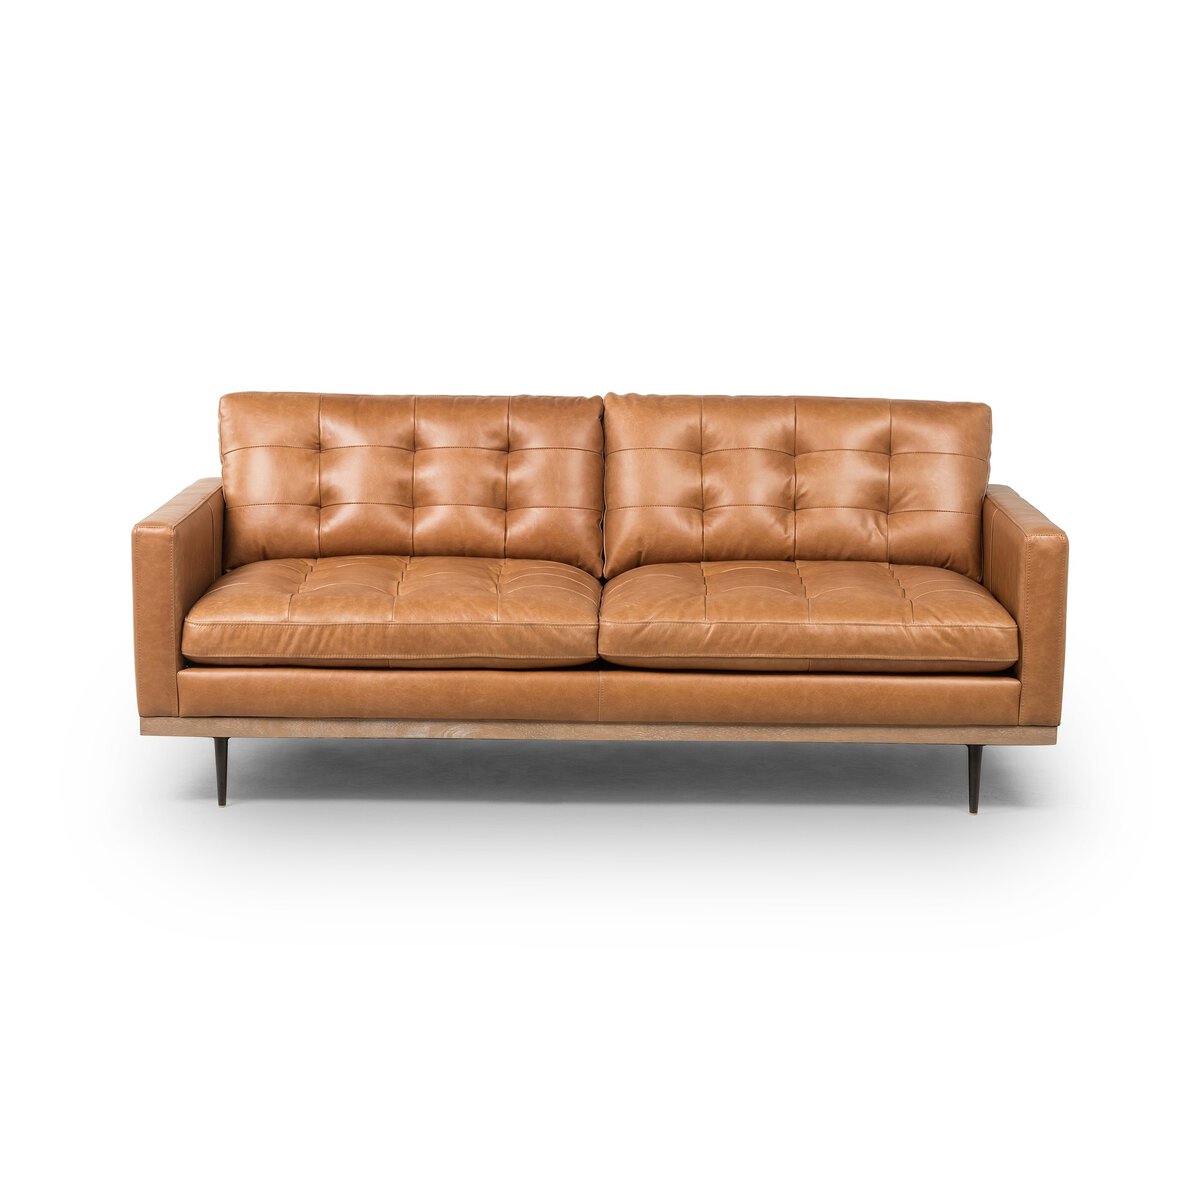 Tufted Leather Sofa